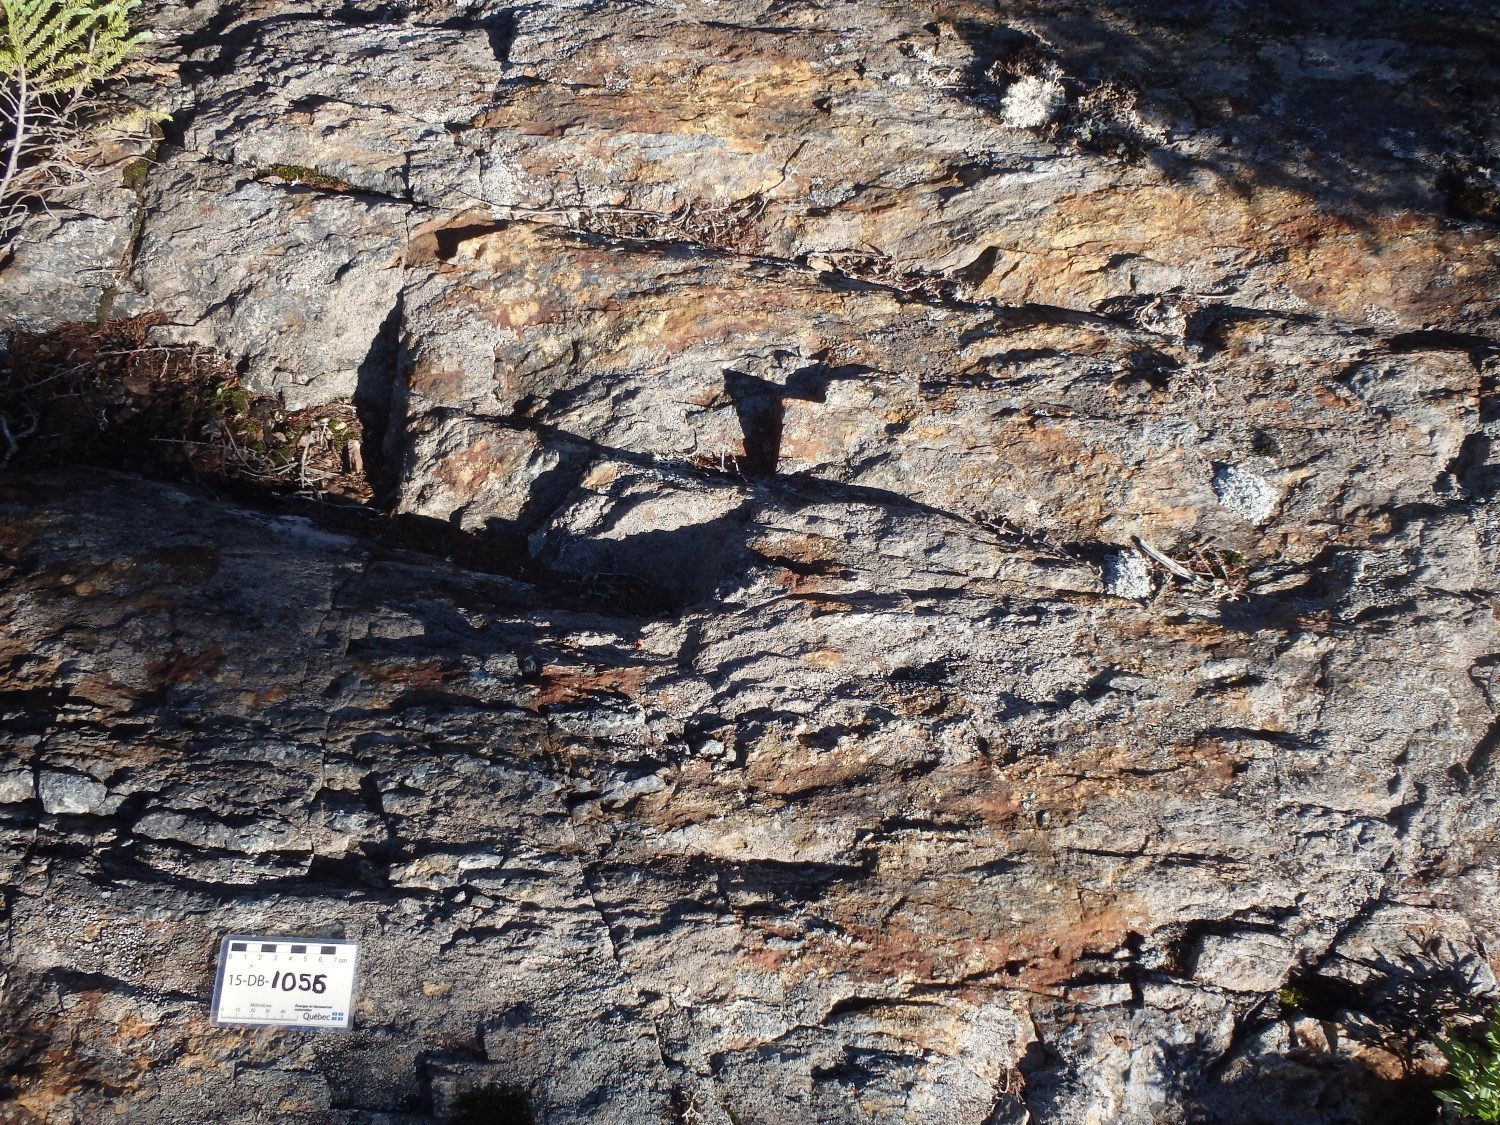 Indice Lac Véronneau. Corridor de déformation dans les basaltes du Groupe de Colomb-Chaboullié (nAcch1). Veine aurifère en bas à gauche. Affleurement 15-DB-1056.